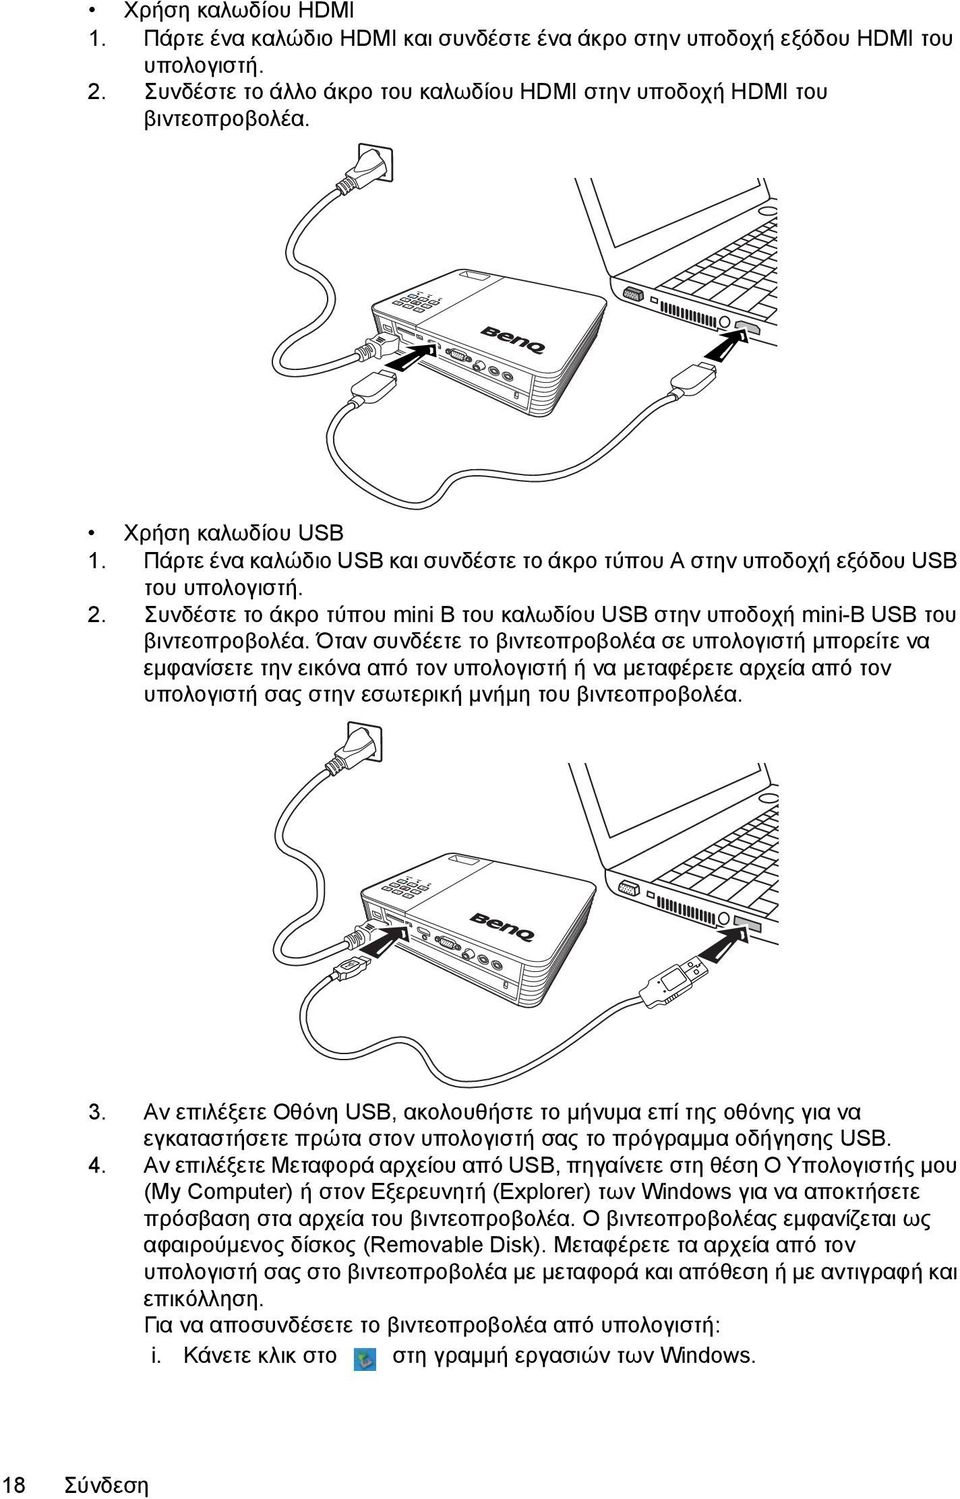 Συνδέστε το άκρο τύπου mini B του καλωδίου USB στην υποδοχή mini-b USB του βιντεοπροβολέα.